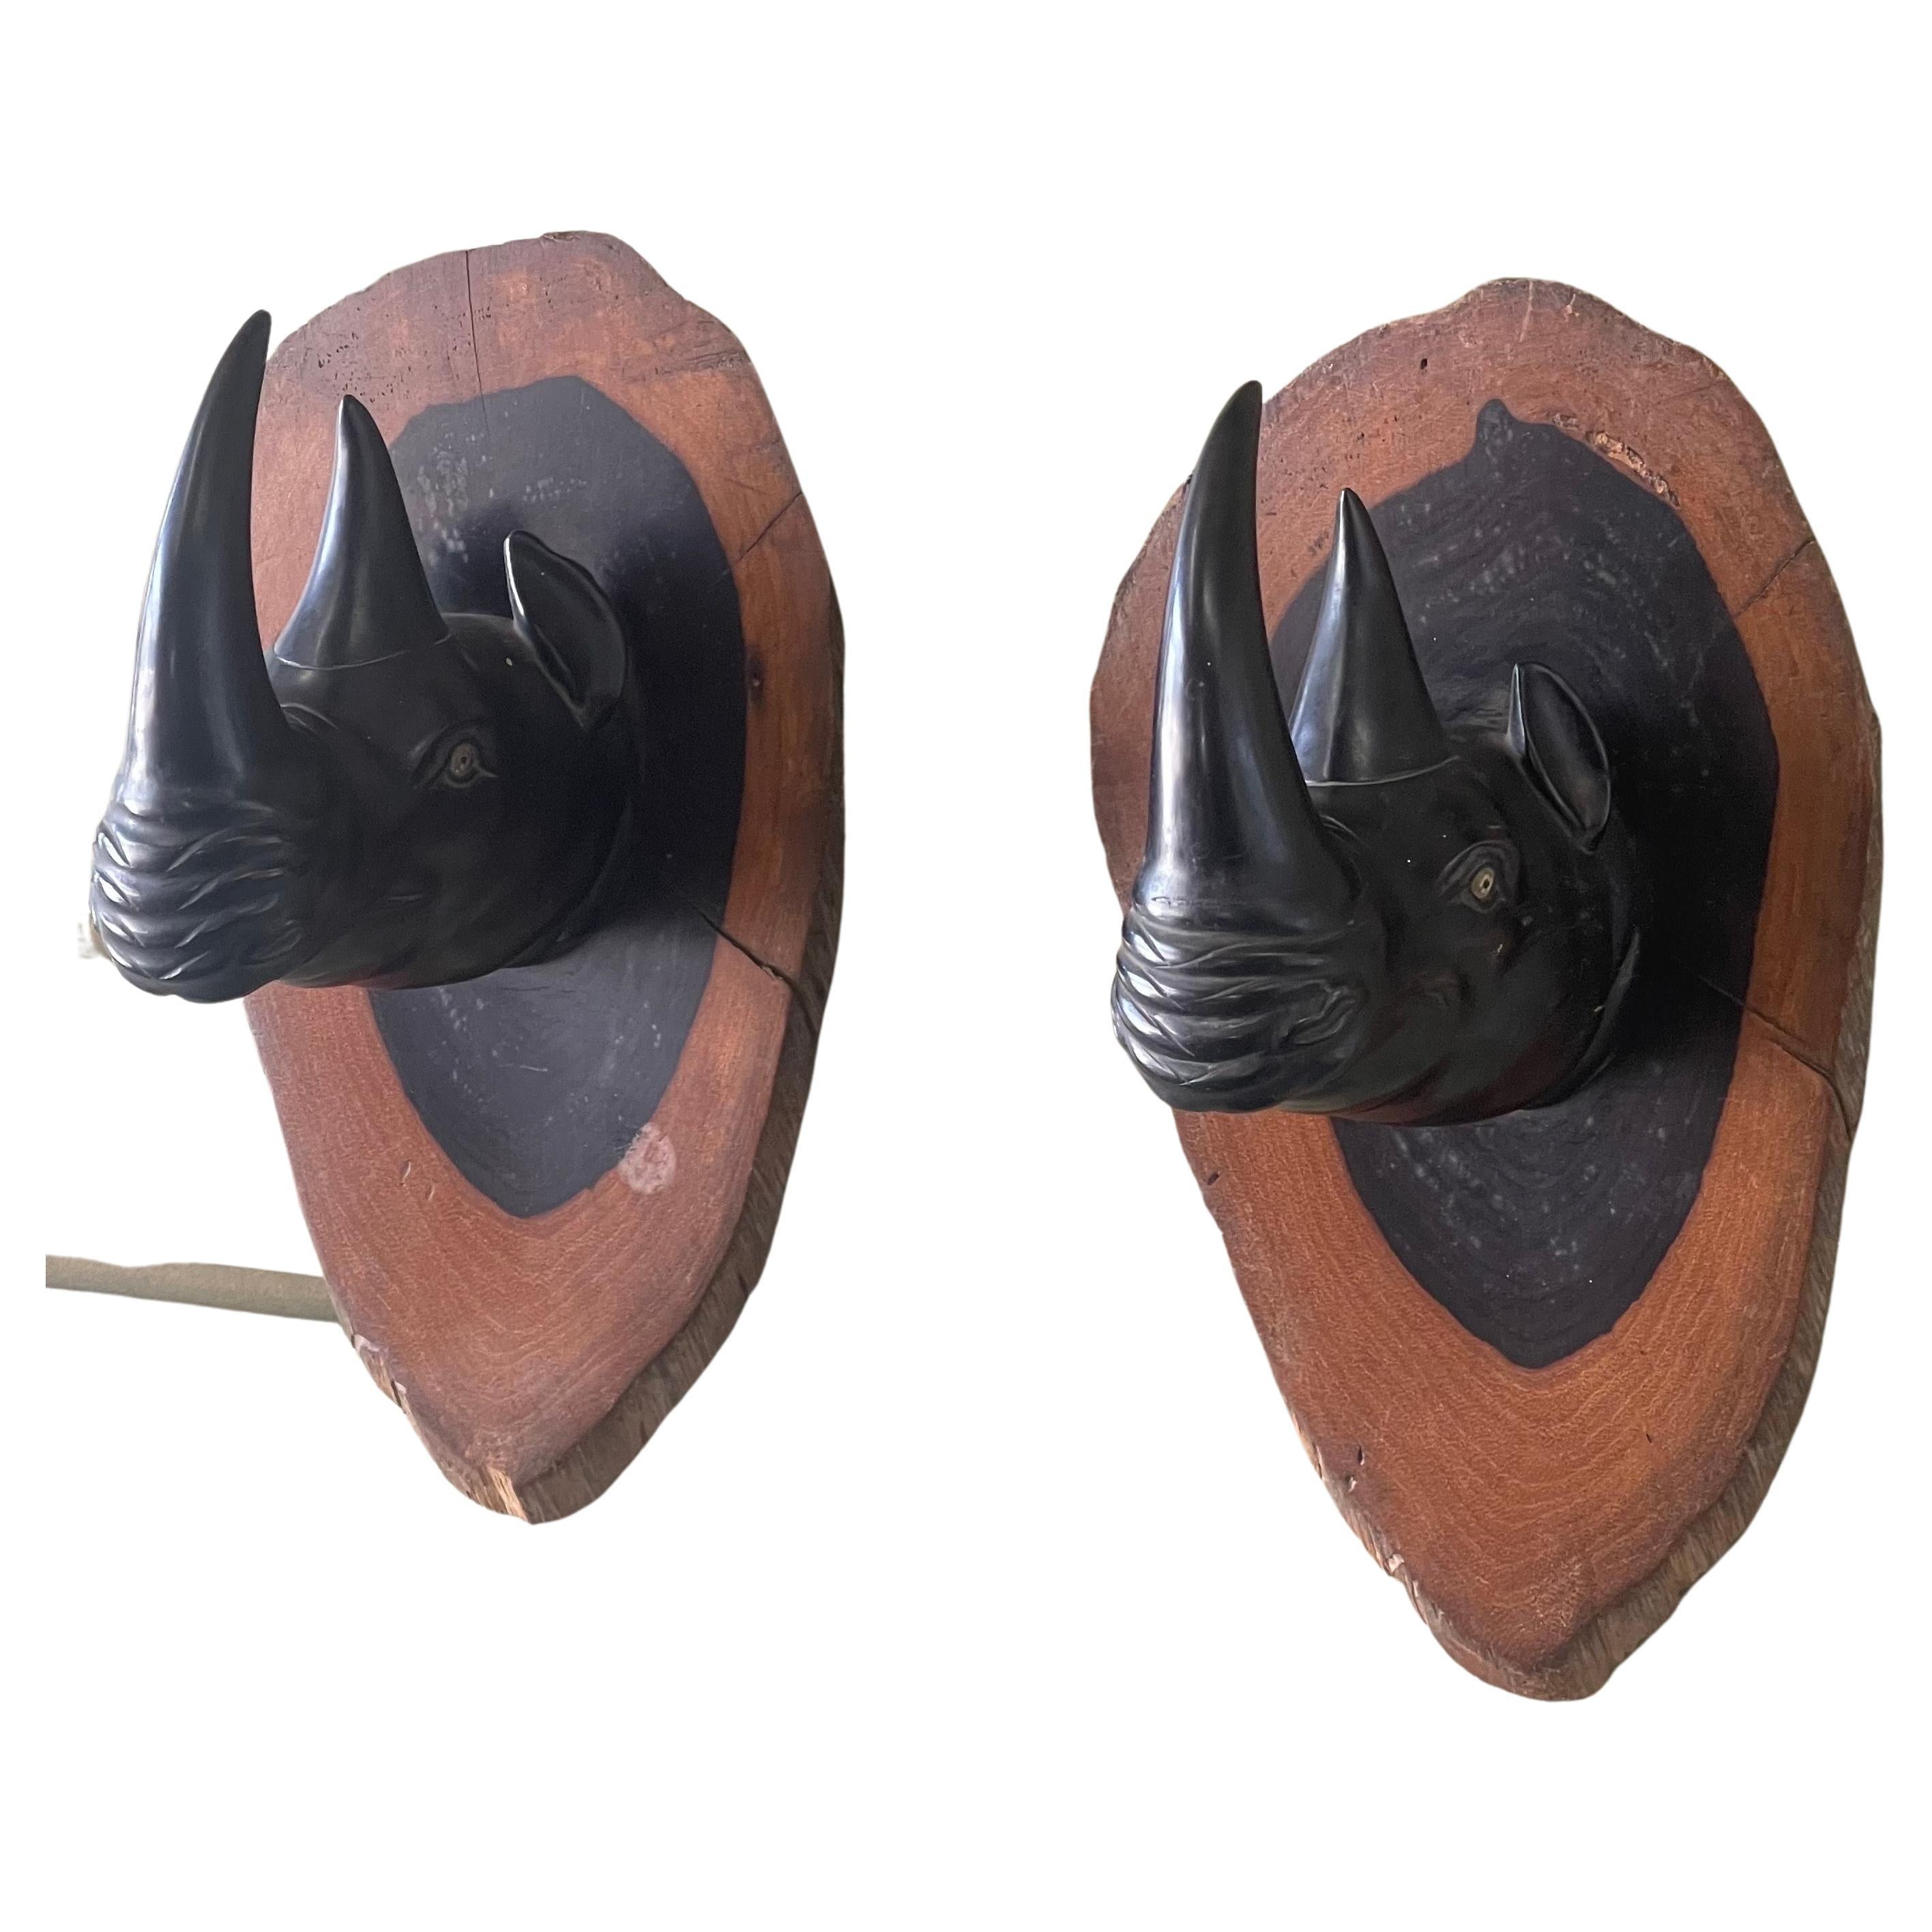 Paire de plaques murales / sculptures de rhinocéros en ébène sculptées à la main avec des yeux en verre sur un bois dur africain bicolore, vers les années 1970. Les plaques sont extrêmement bien fabriquées et solides ; elles sont dotées d'une